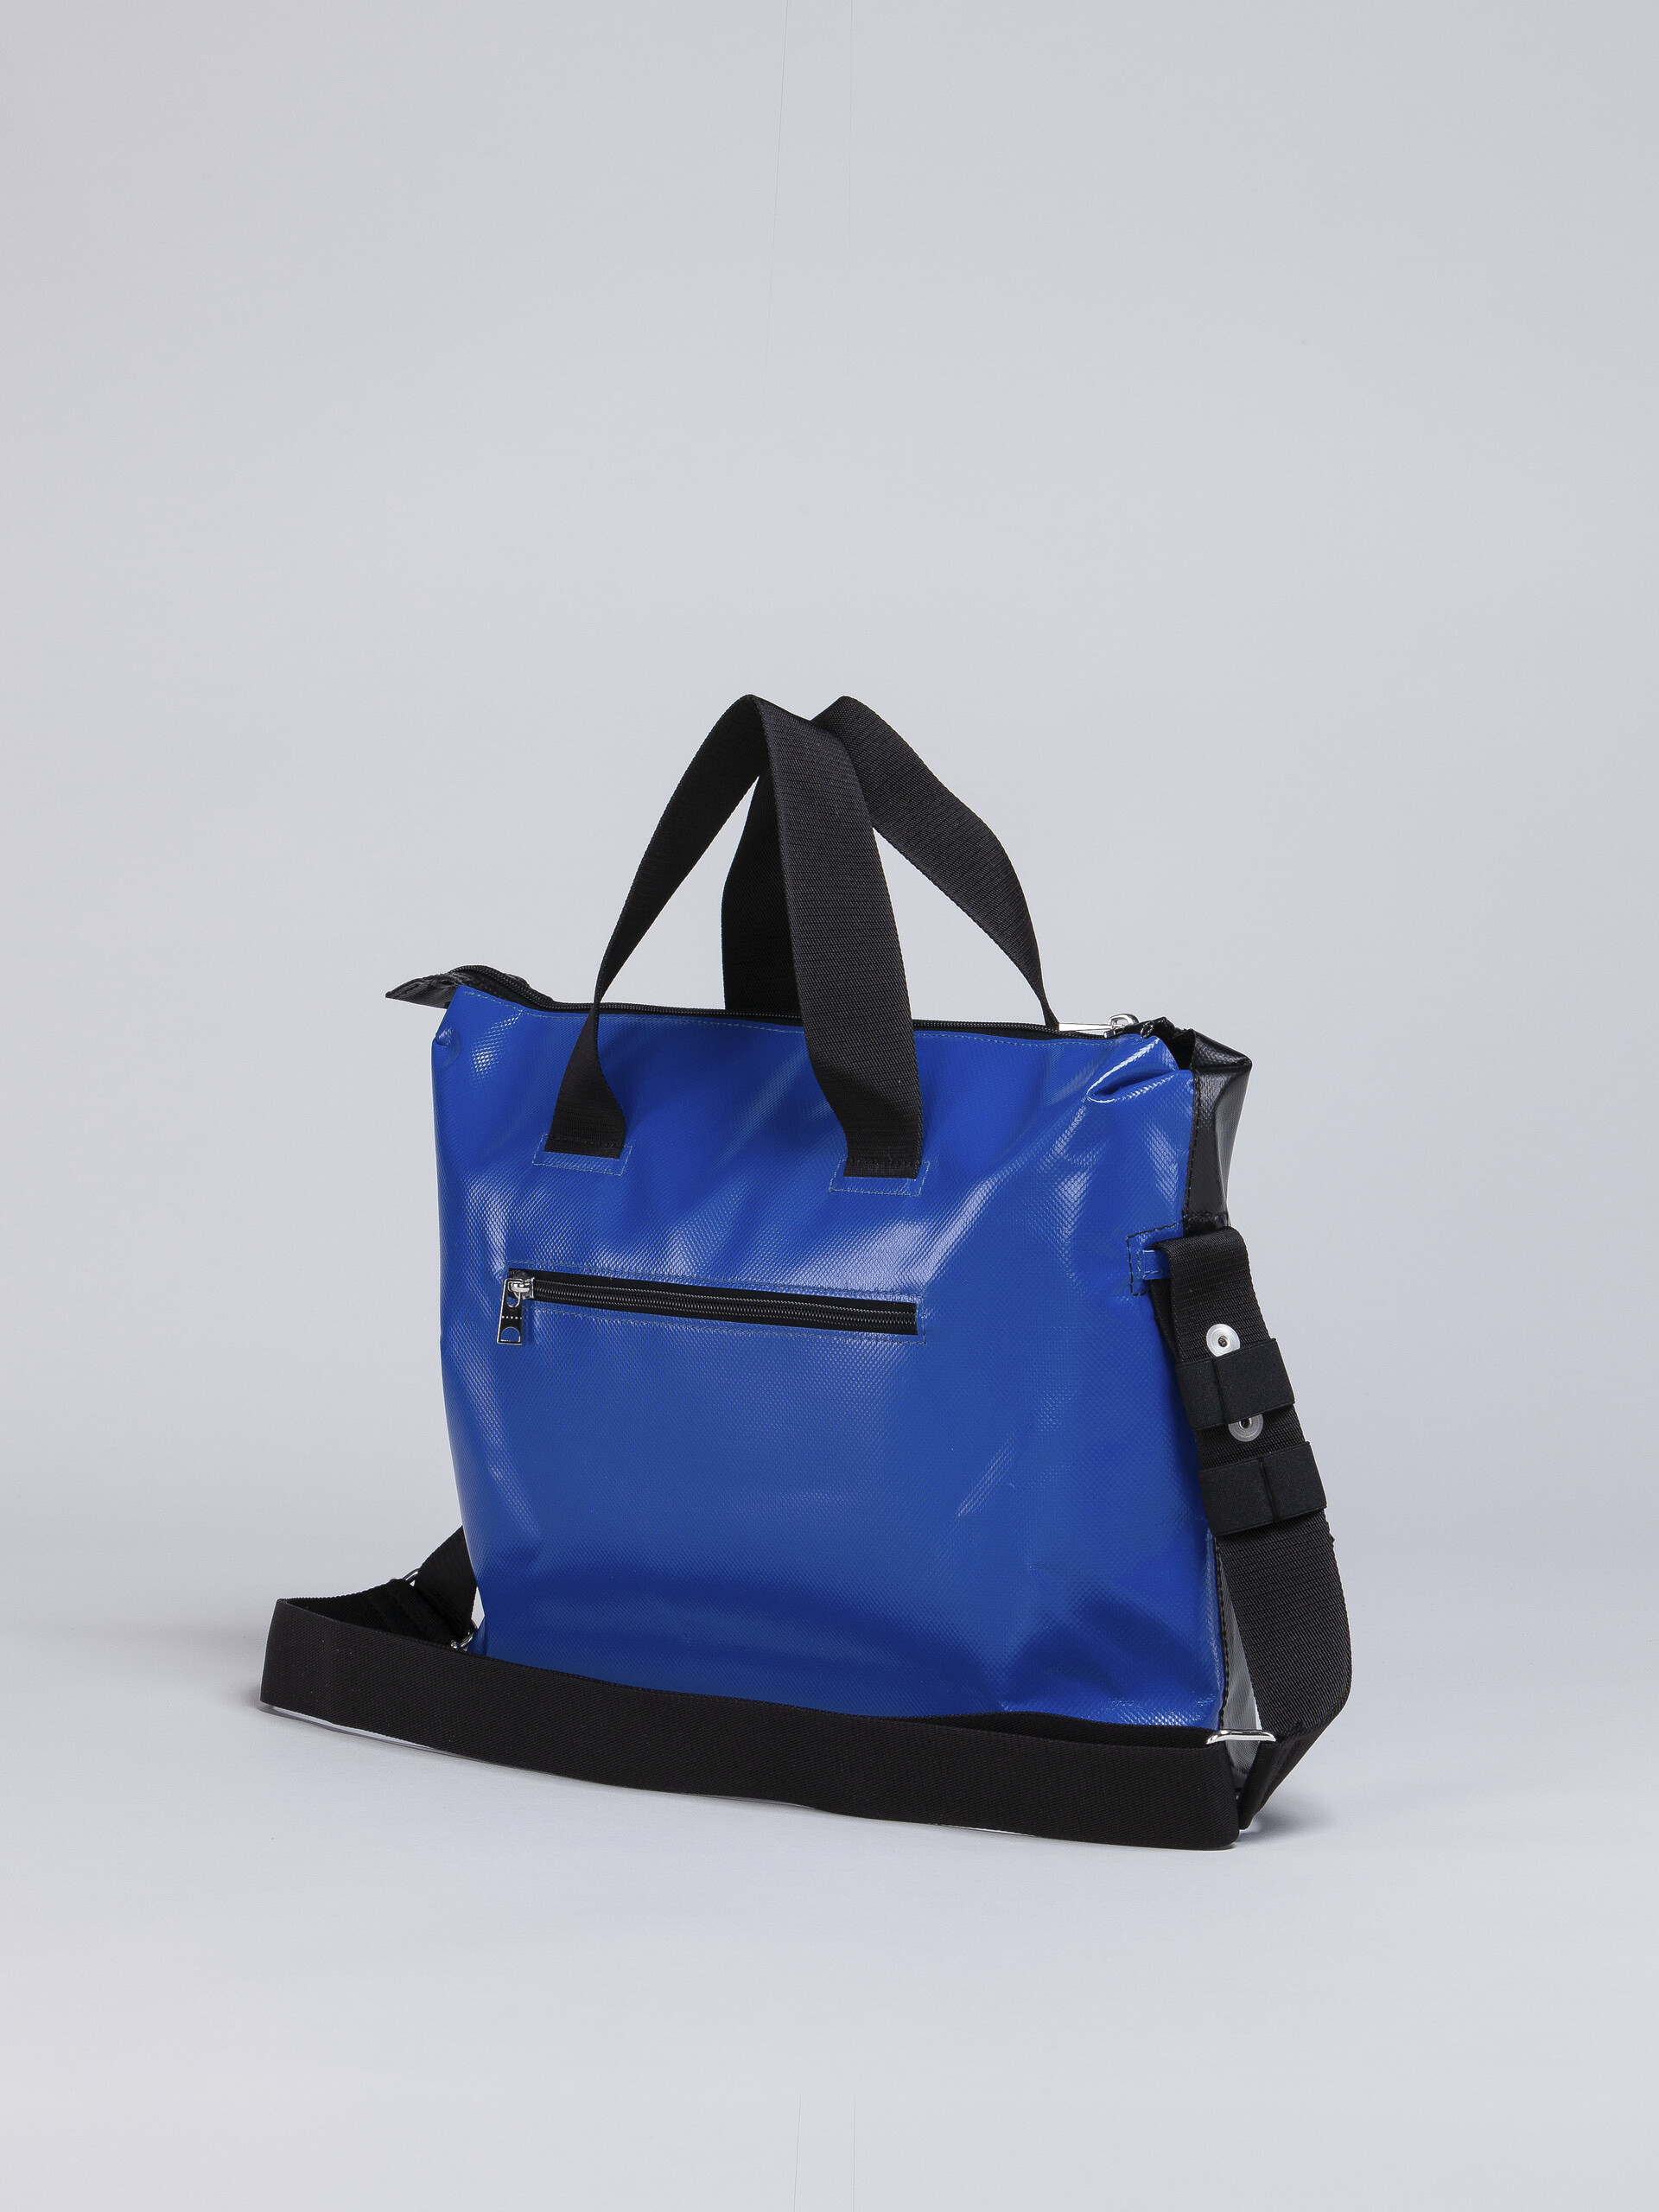 Black and blue TRIBECA bag - Handbags - Image 3